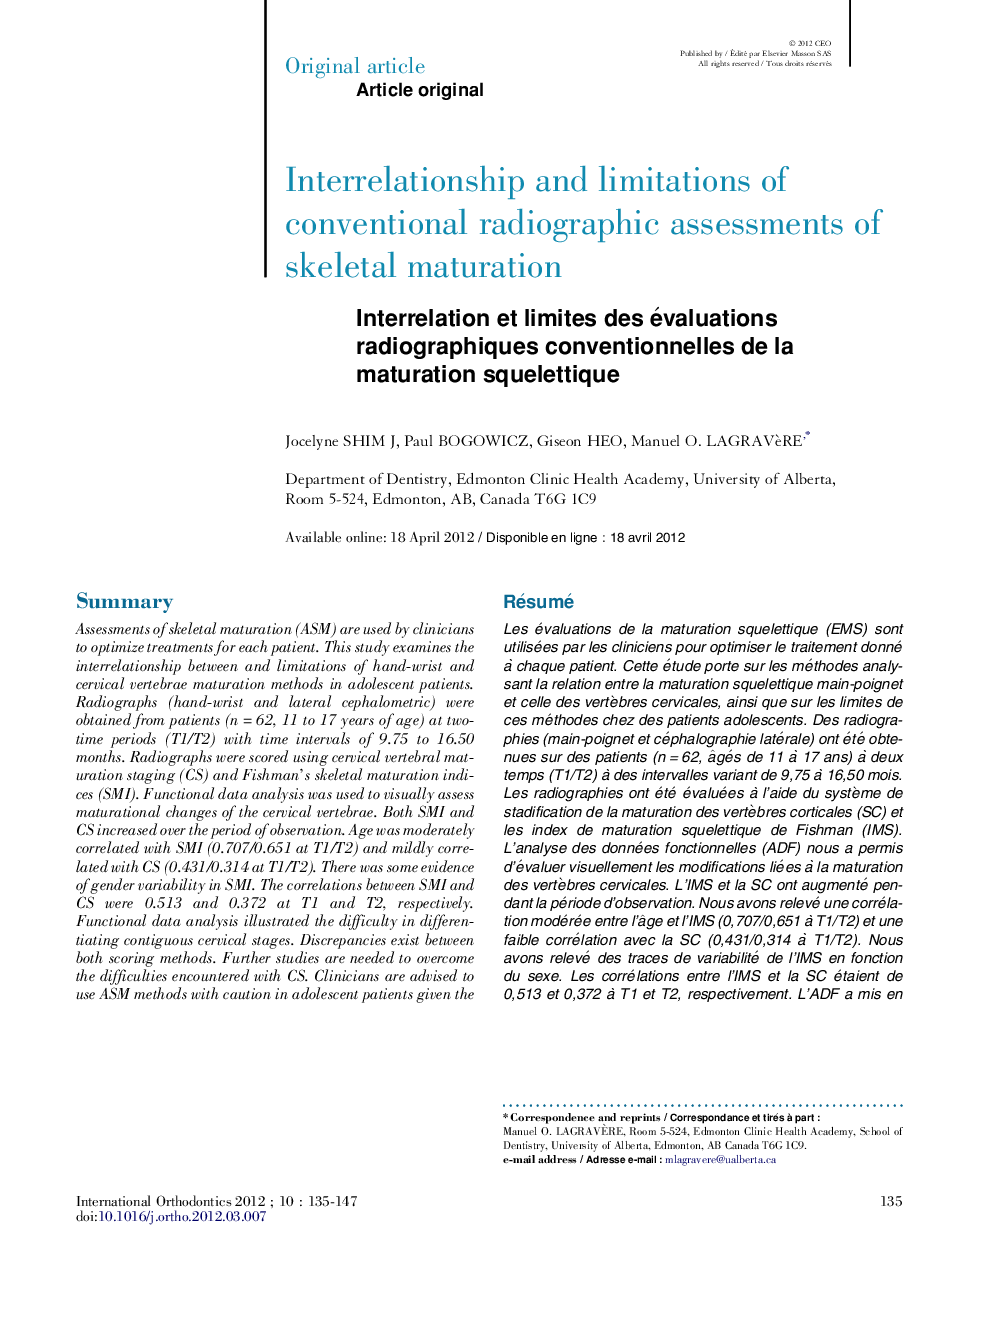 Interrelation et limites des évaluations radiographiques conventionnelles de la maturation squelettique